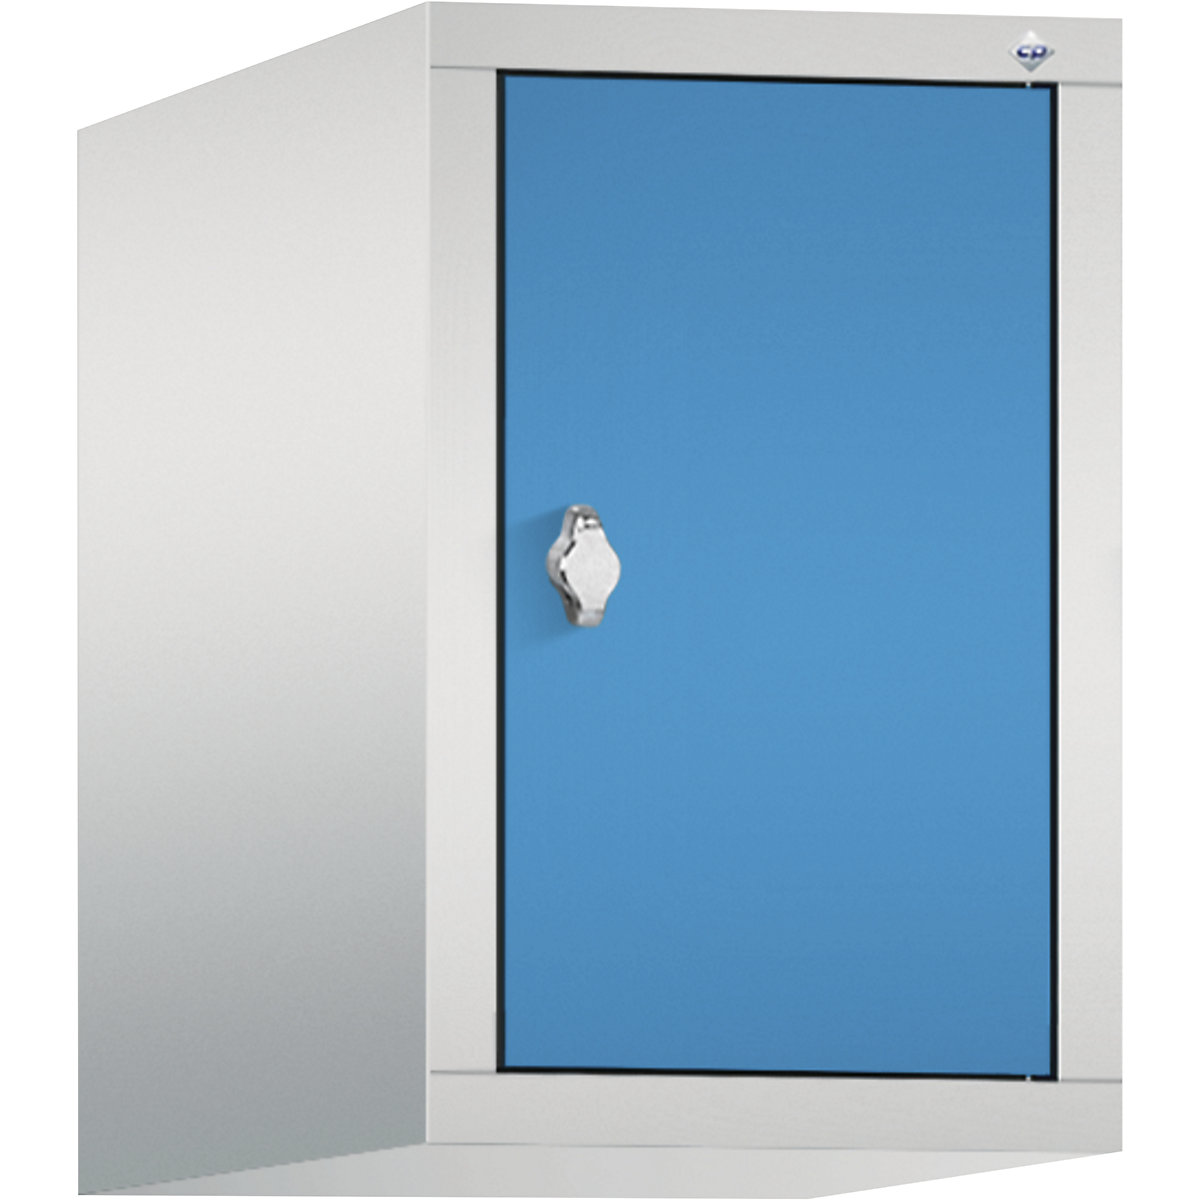 C+P – Altillo CLASSIC, 1 compartimento, anchura de compartimento 300 mm, gris luminoso / azul luminoso